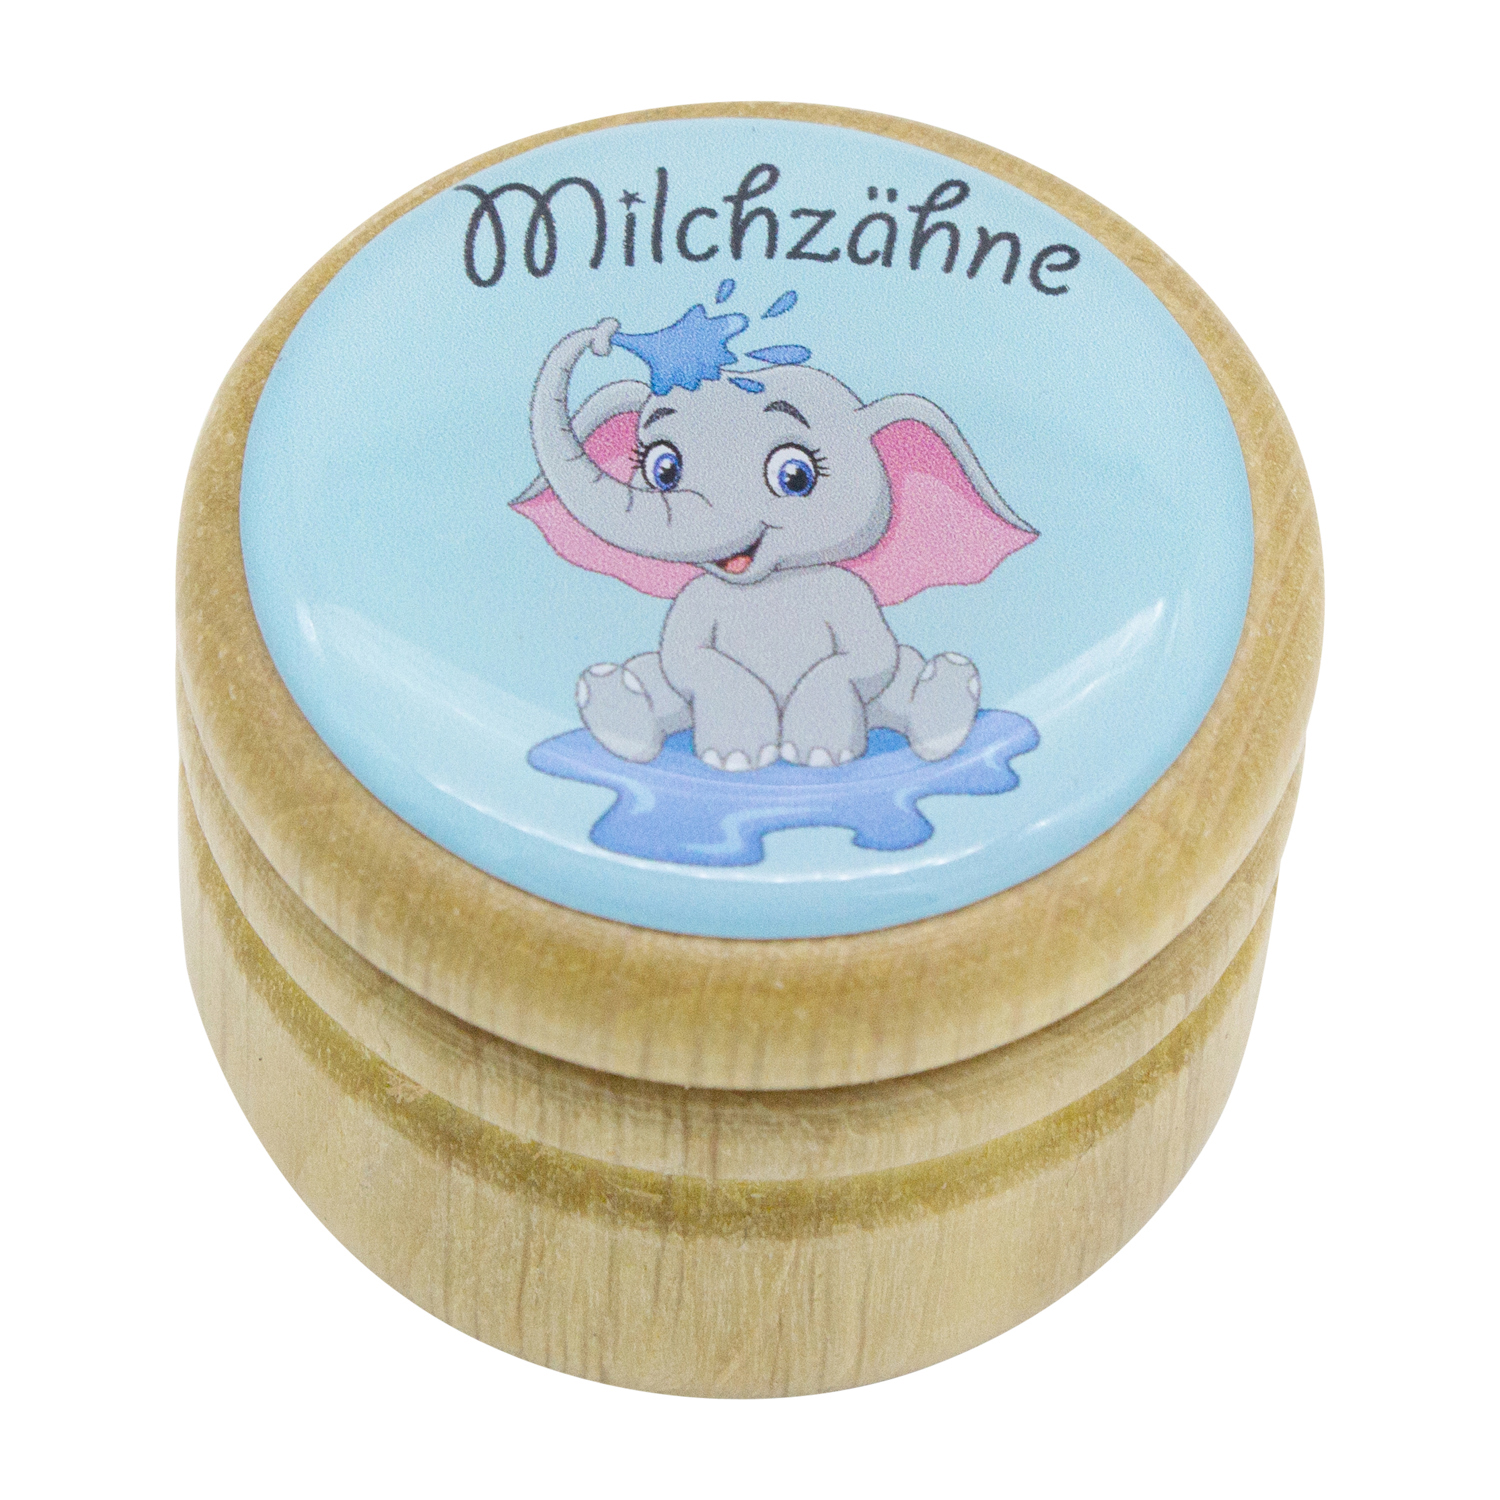 Milchzahndose Elefant Zahndose Milchzähne Bilderdose aus Holz mit Drehverschluss 44 mm ( Elefant )- 7017